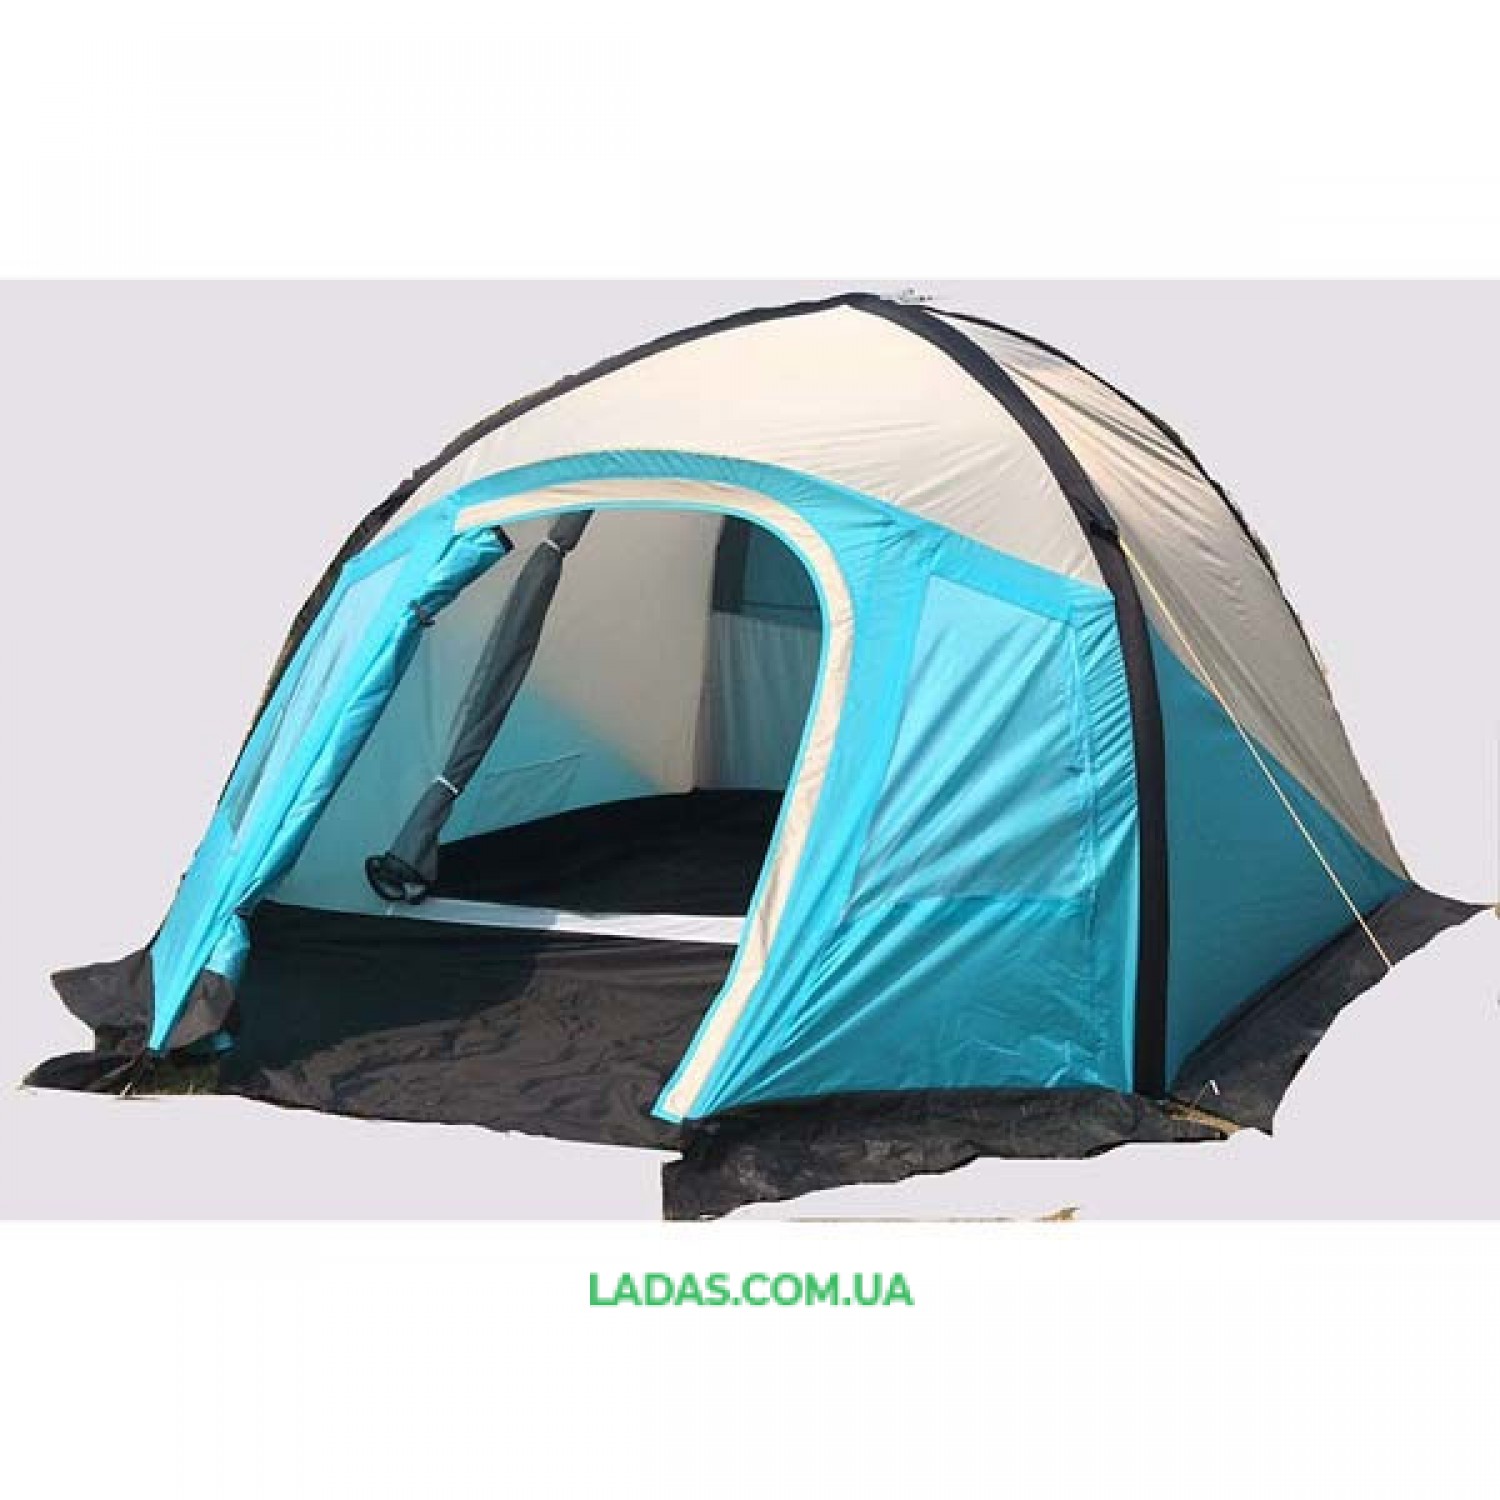 Палатка 3-х местная Mimir 800 , надувная( р-р 2.1 х 2.1 х 1.45 м,вес: 6,5 кг,цвет: голубой-серый)